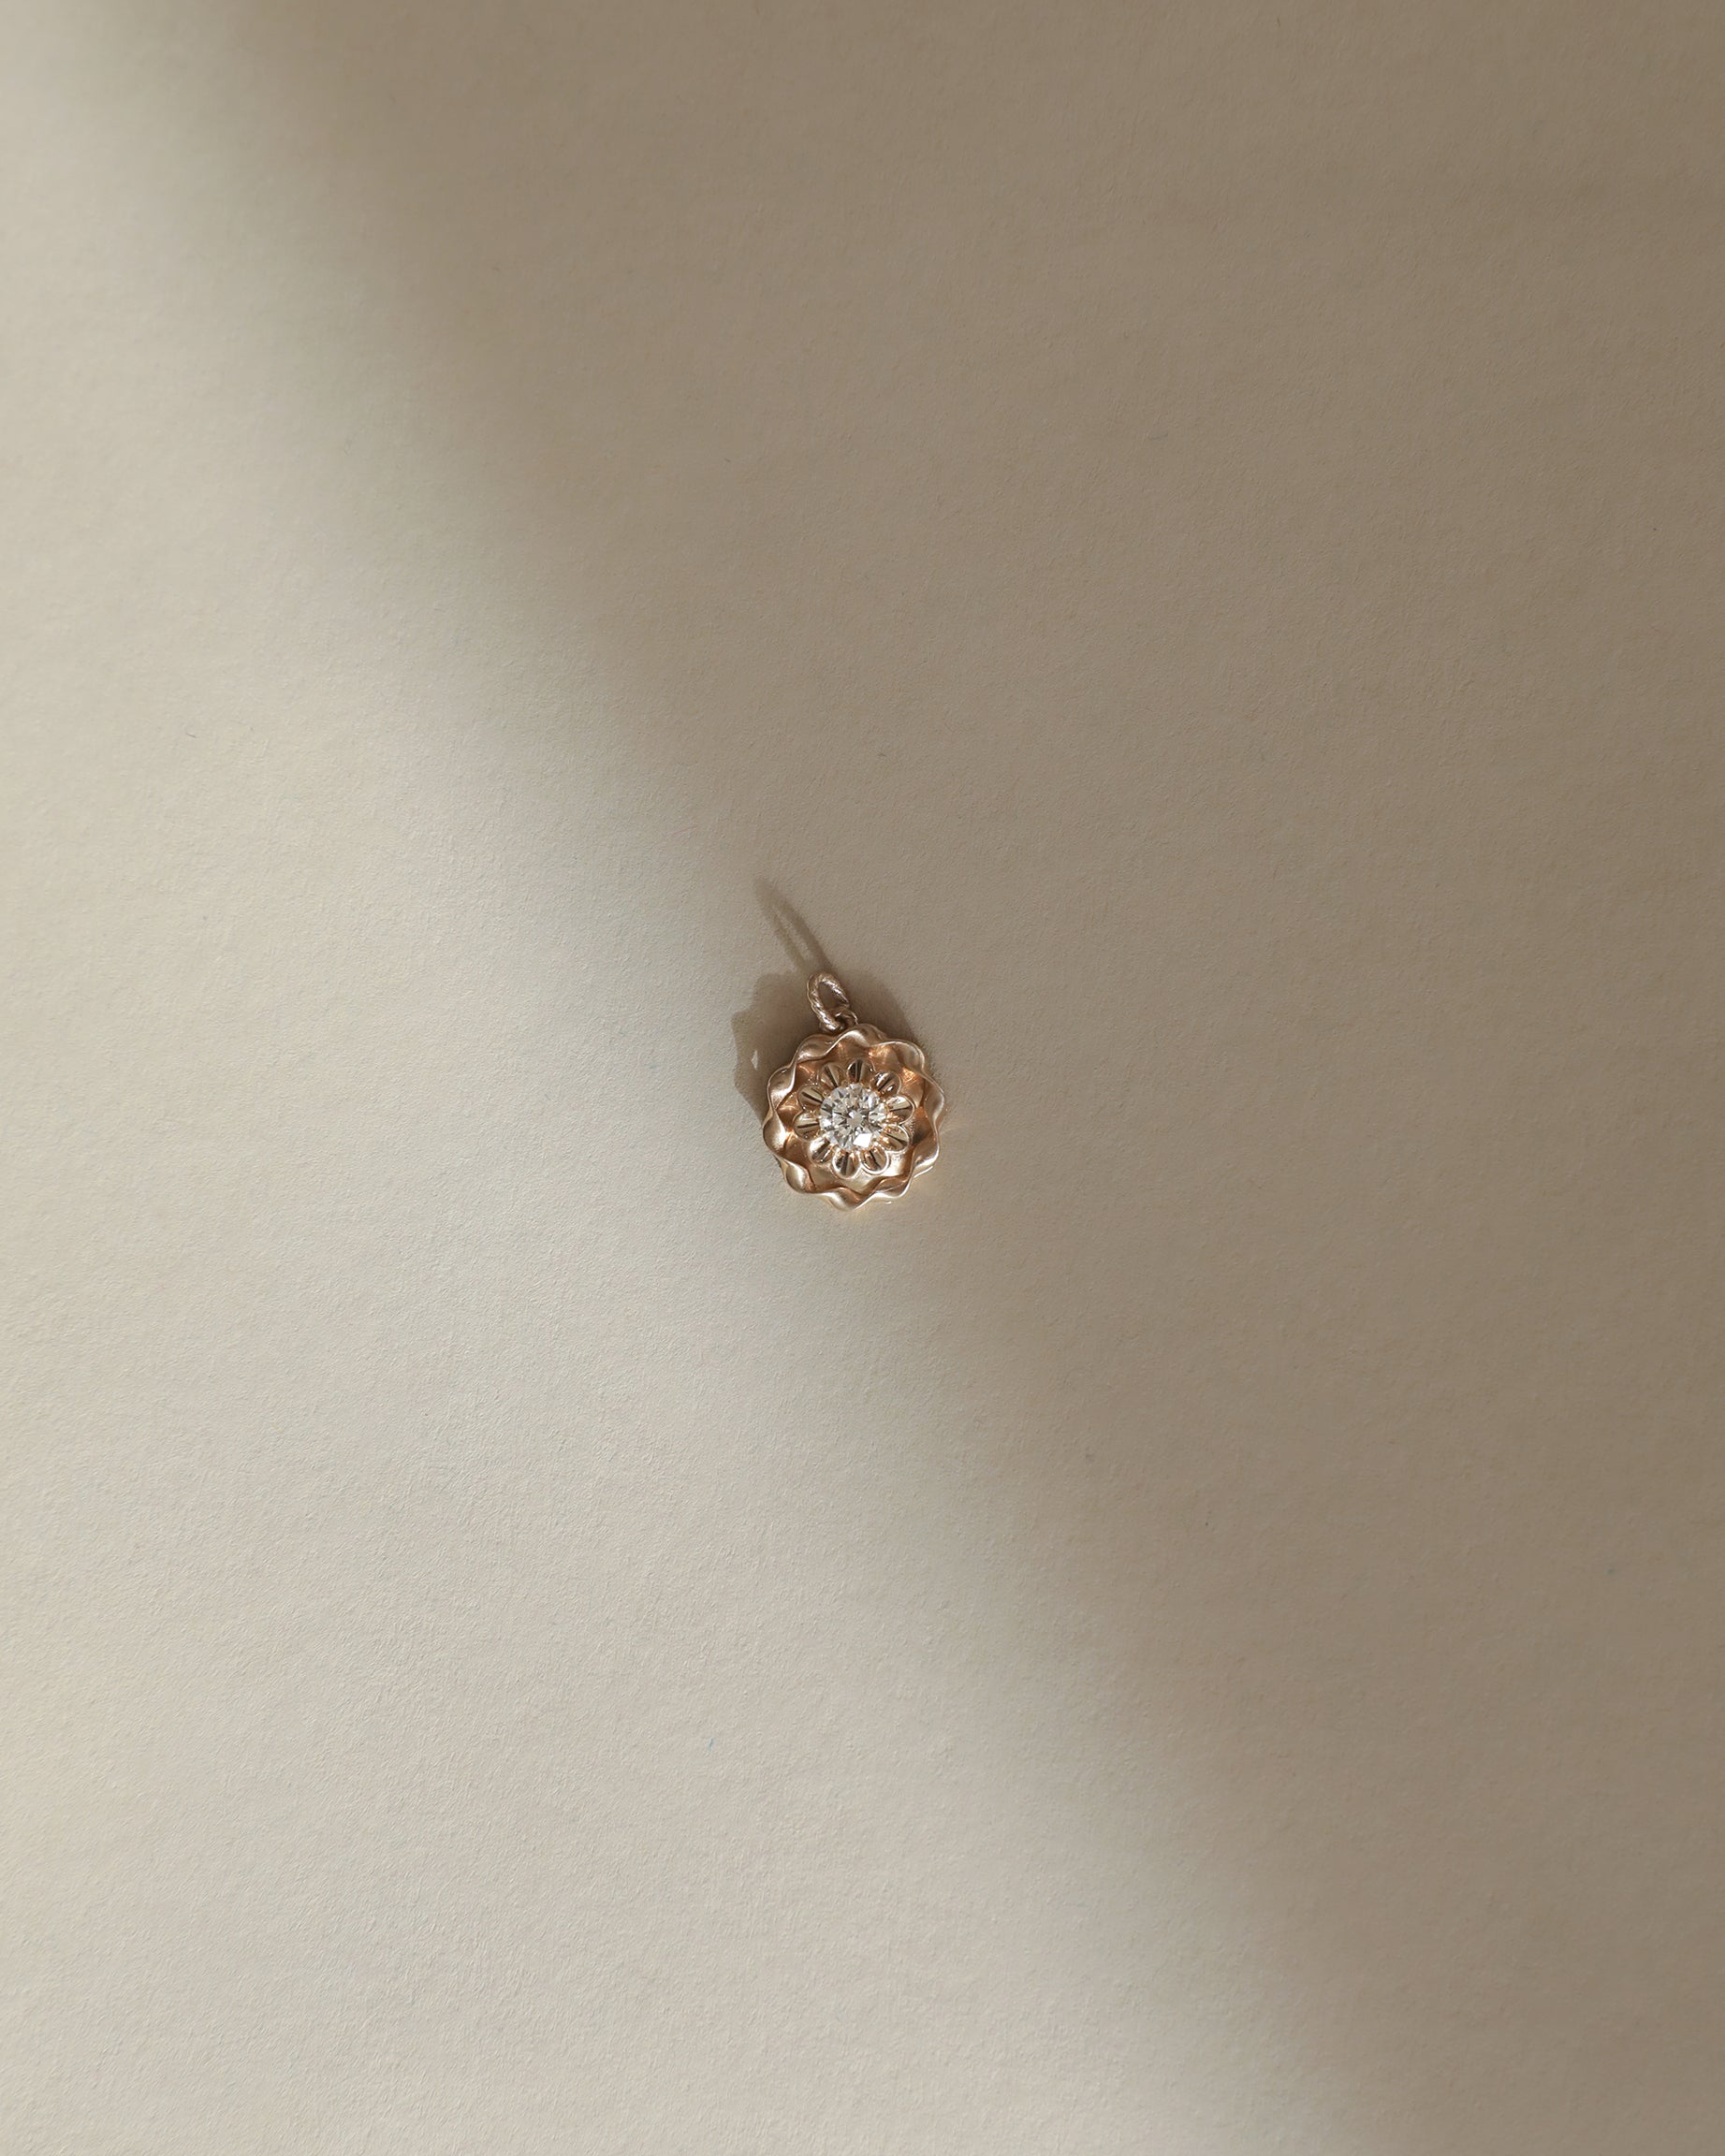 lab created diamond charm pendant